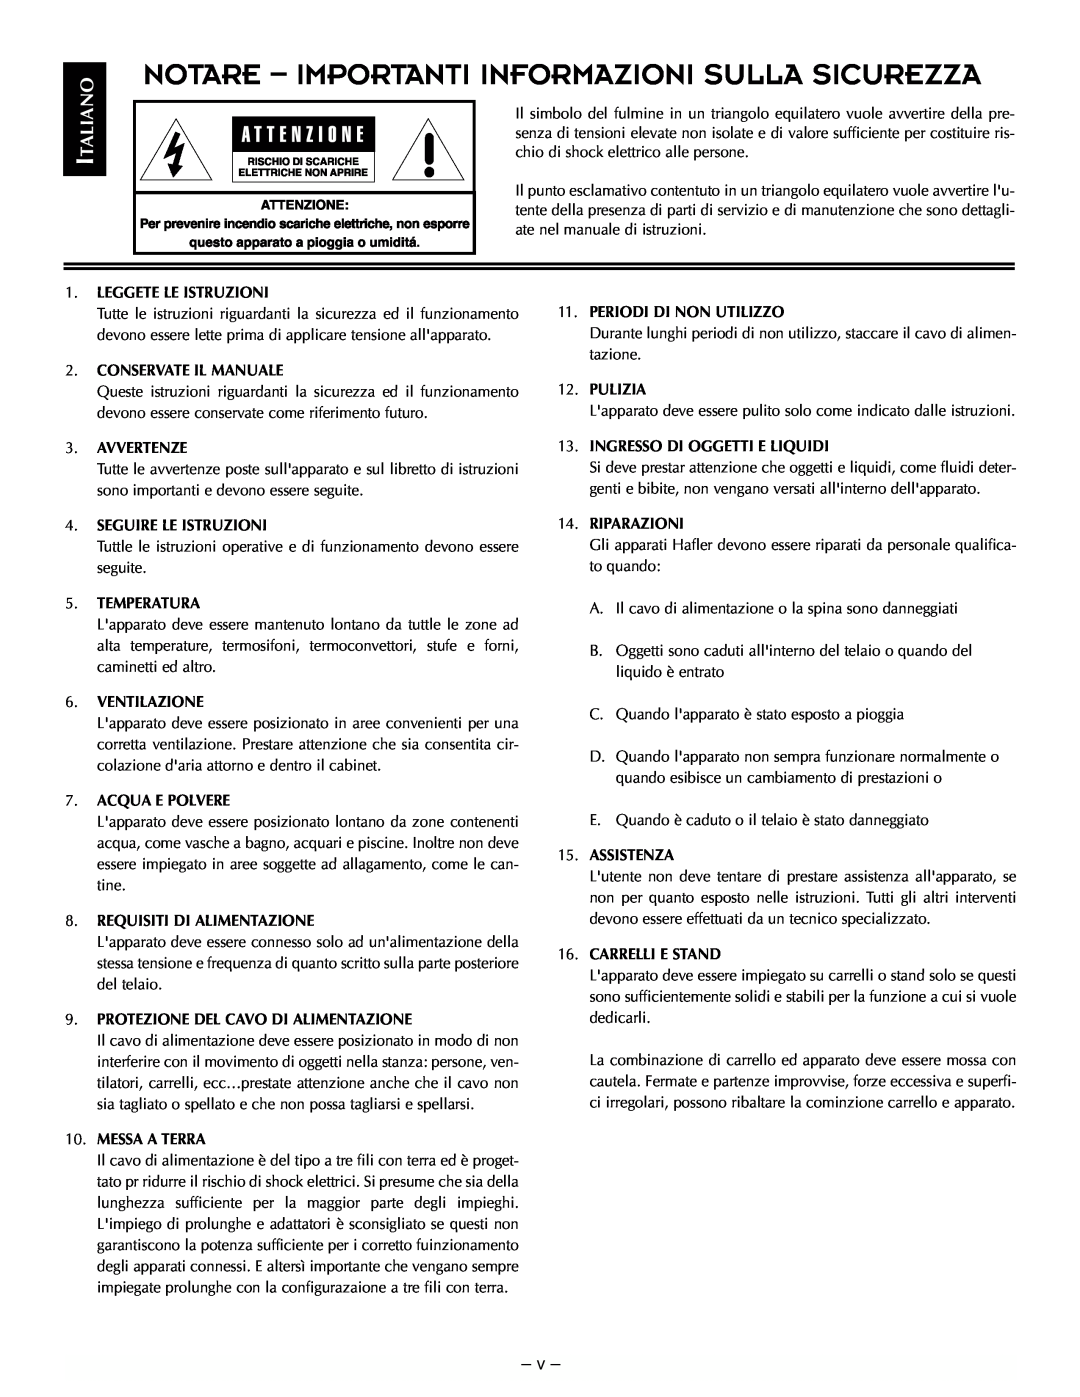 Hafler TRM12.1, TRM10.1 manual Notare - Importanti Informazioni Sulla Sicurezza, Italiano, v 